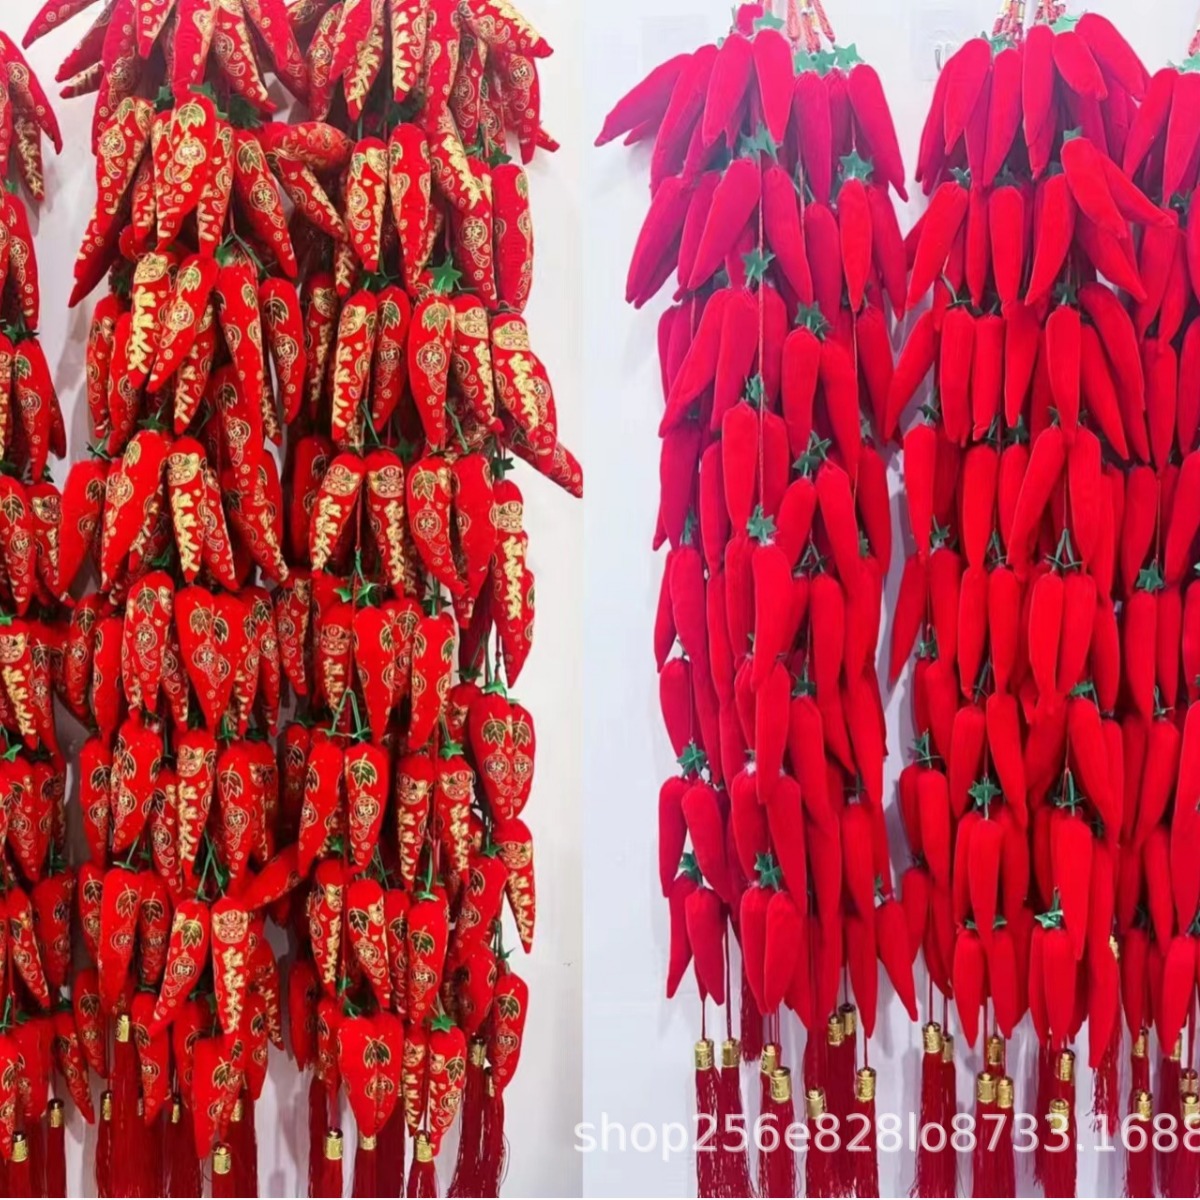 春节过年装饰用品全红辣椒串16头印花辣椒串挂件年货用品厂家批发